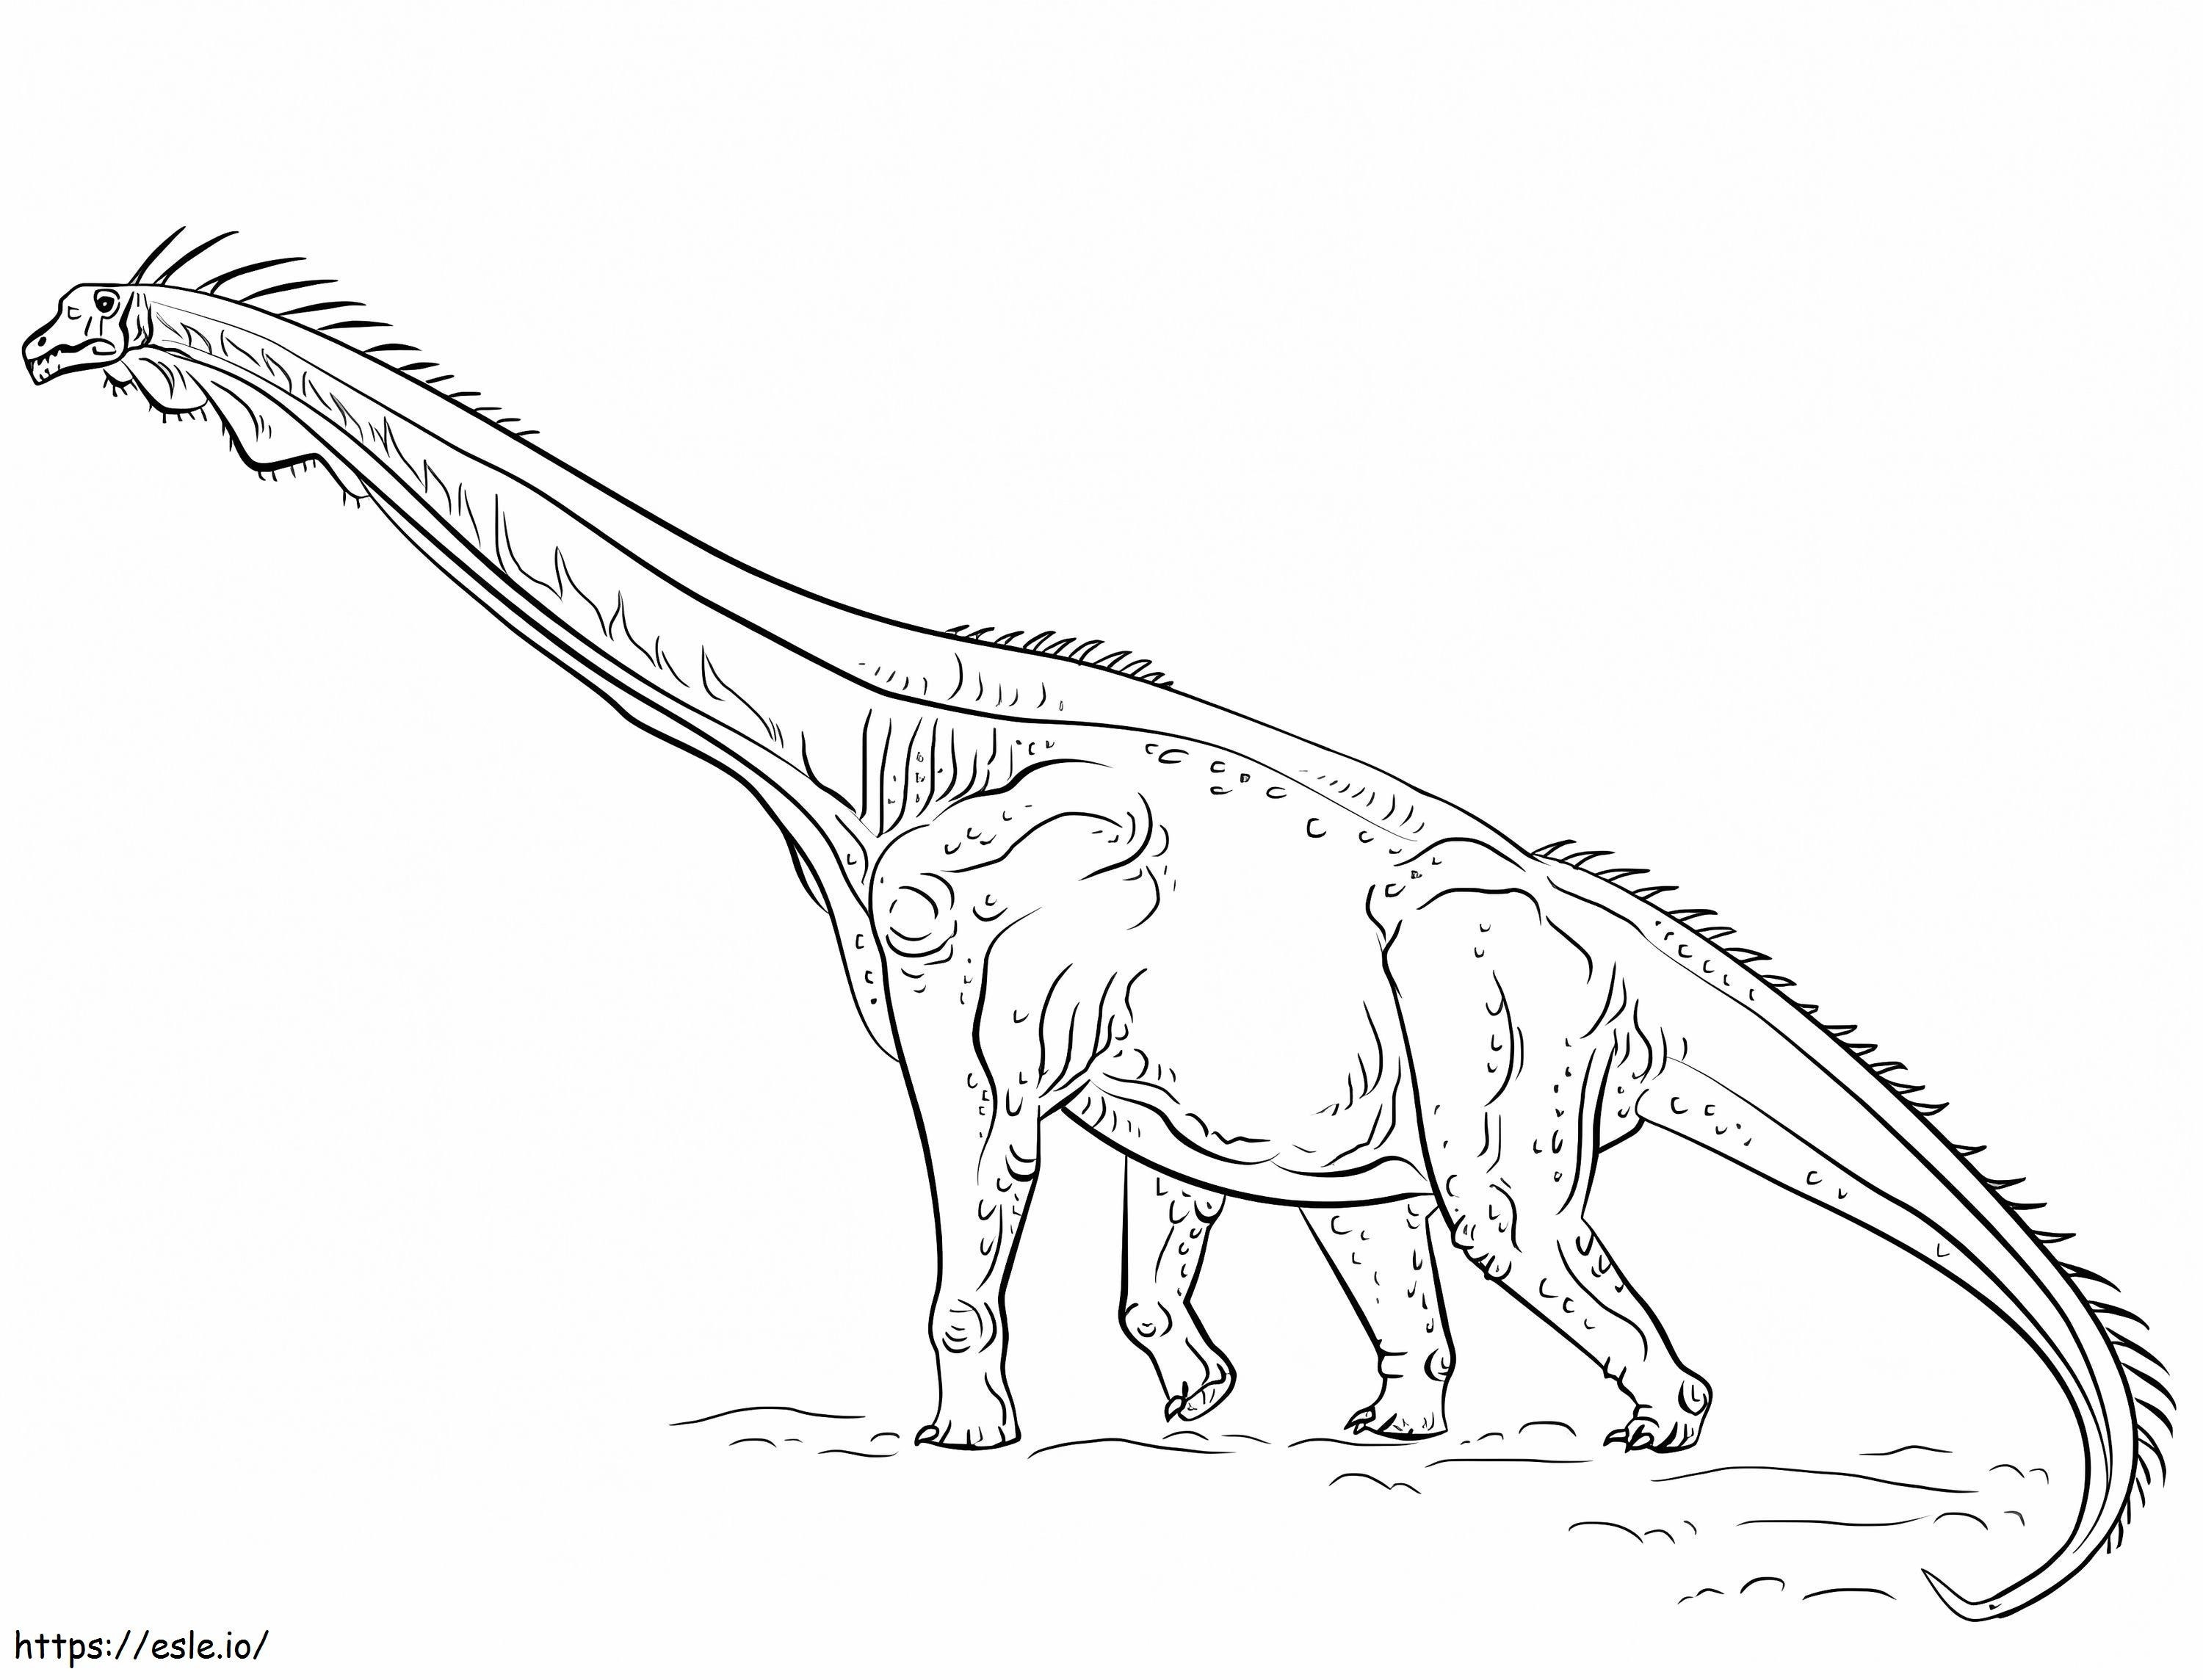 Brachiosaurus beim Gehen ausmalbilder